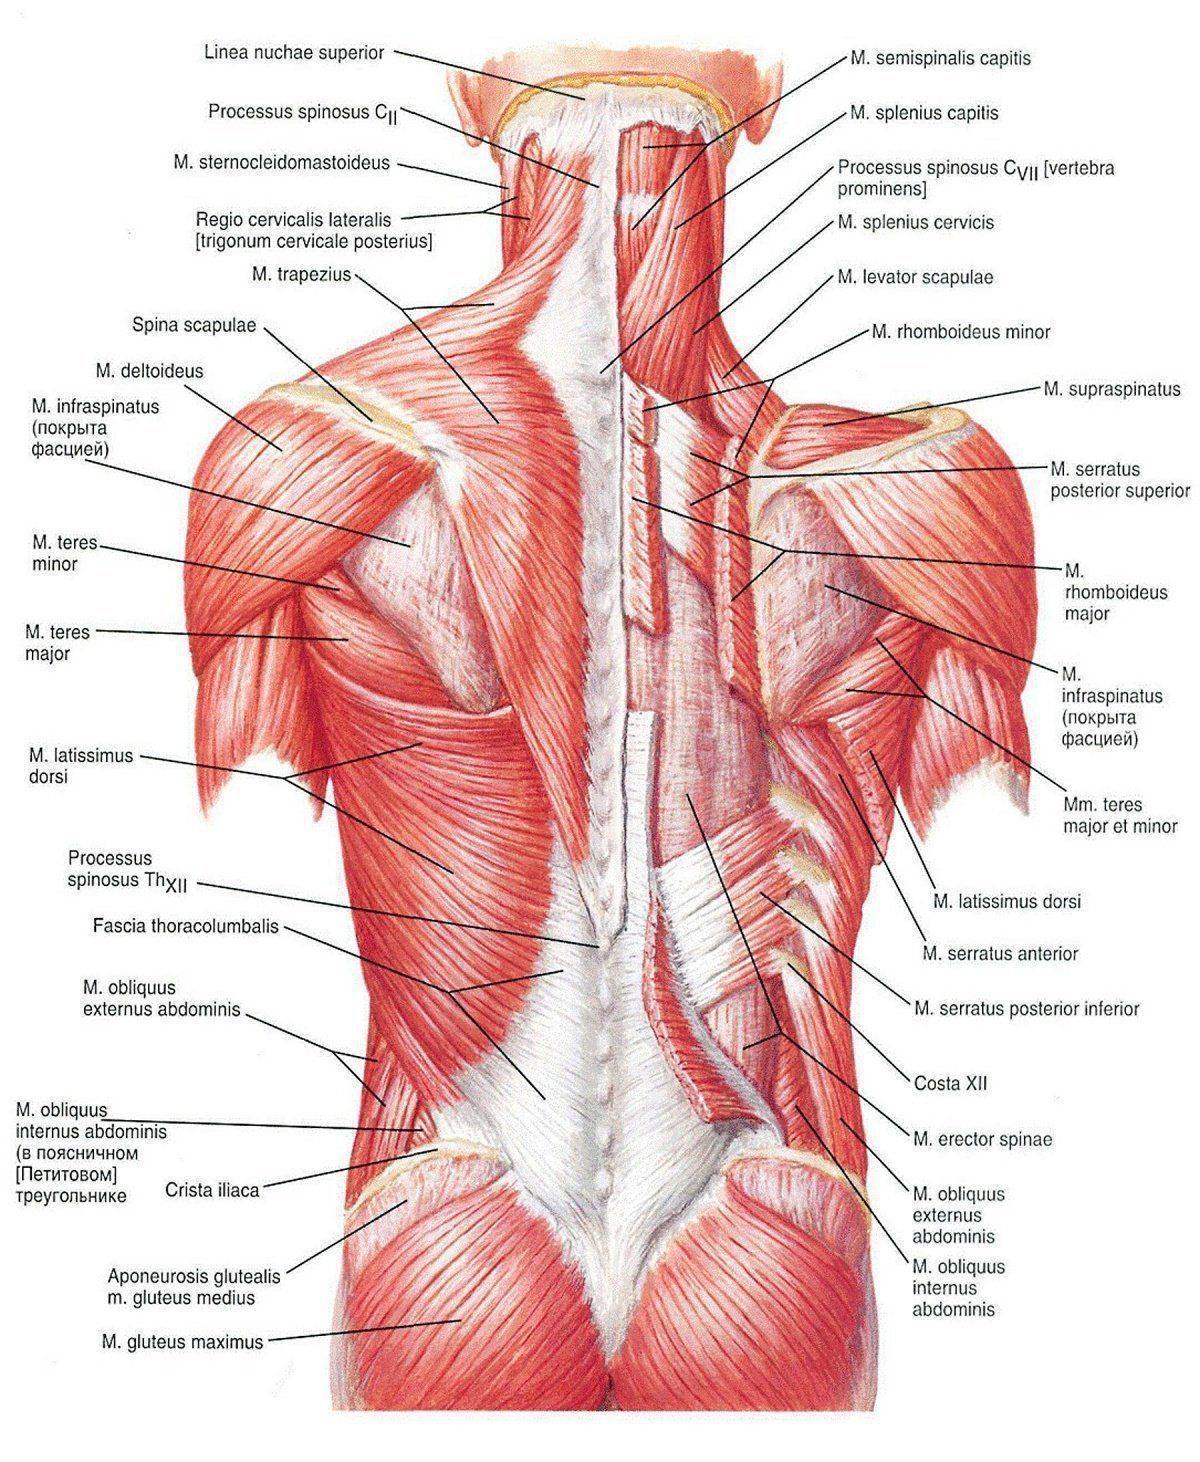 Мышцы спины: анатомия, строение глубоких и поверхностных мышц схема-картинка, функции